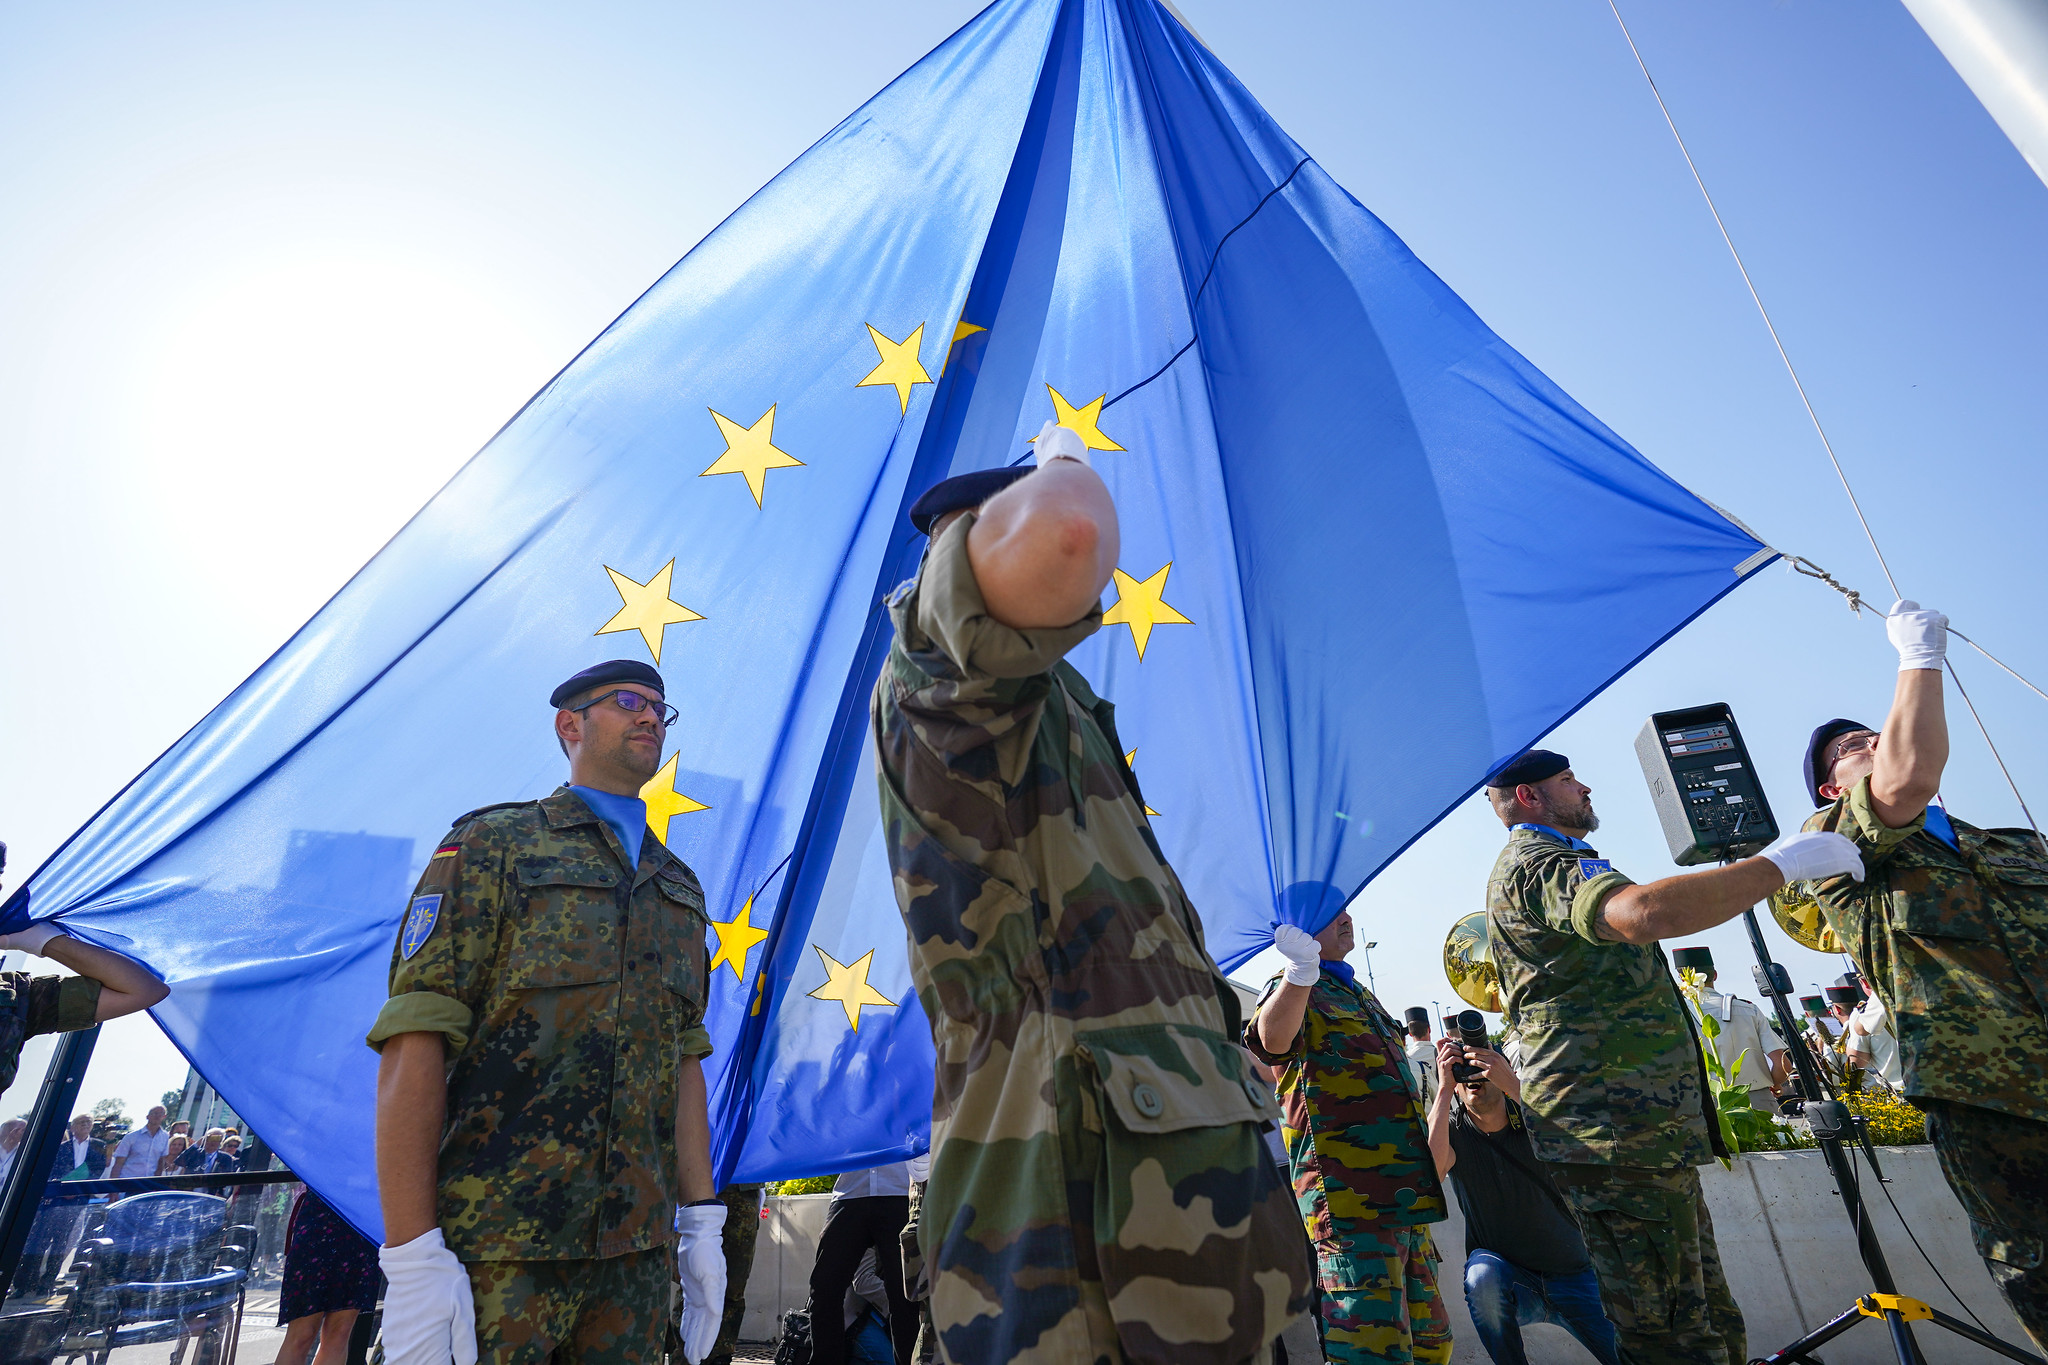 L’UE a un bivio: scegliere la pace o militarizzare?